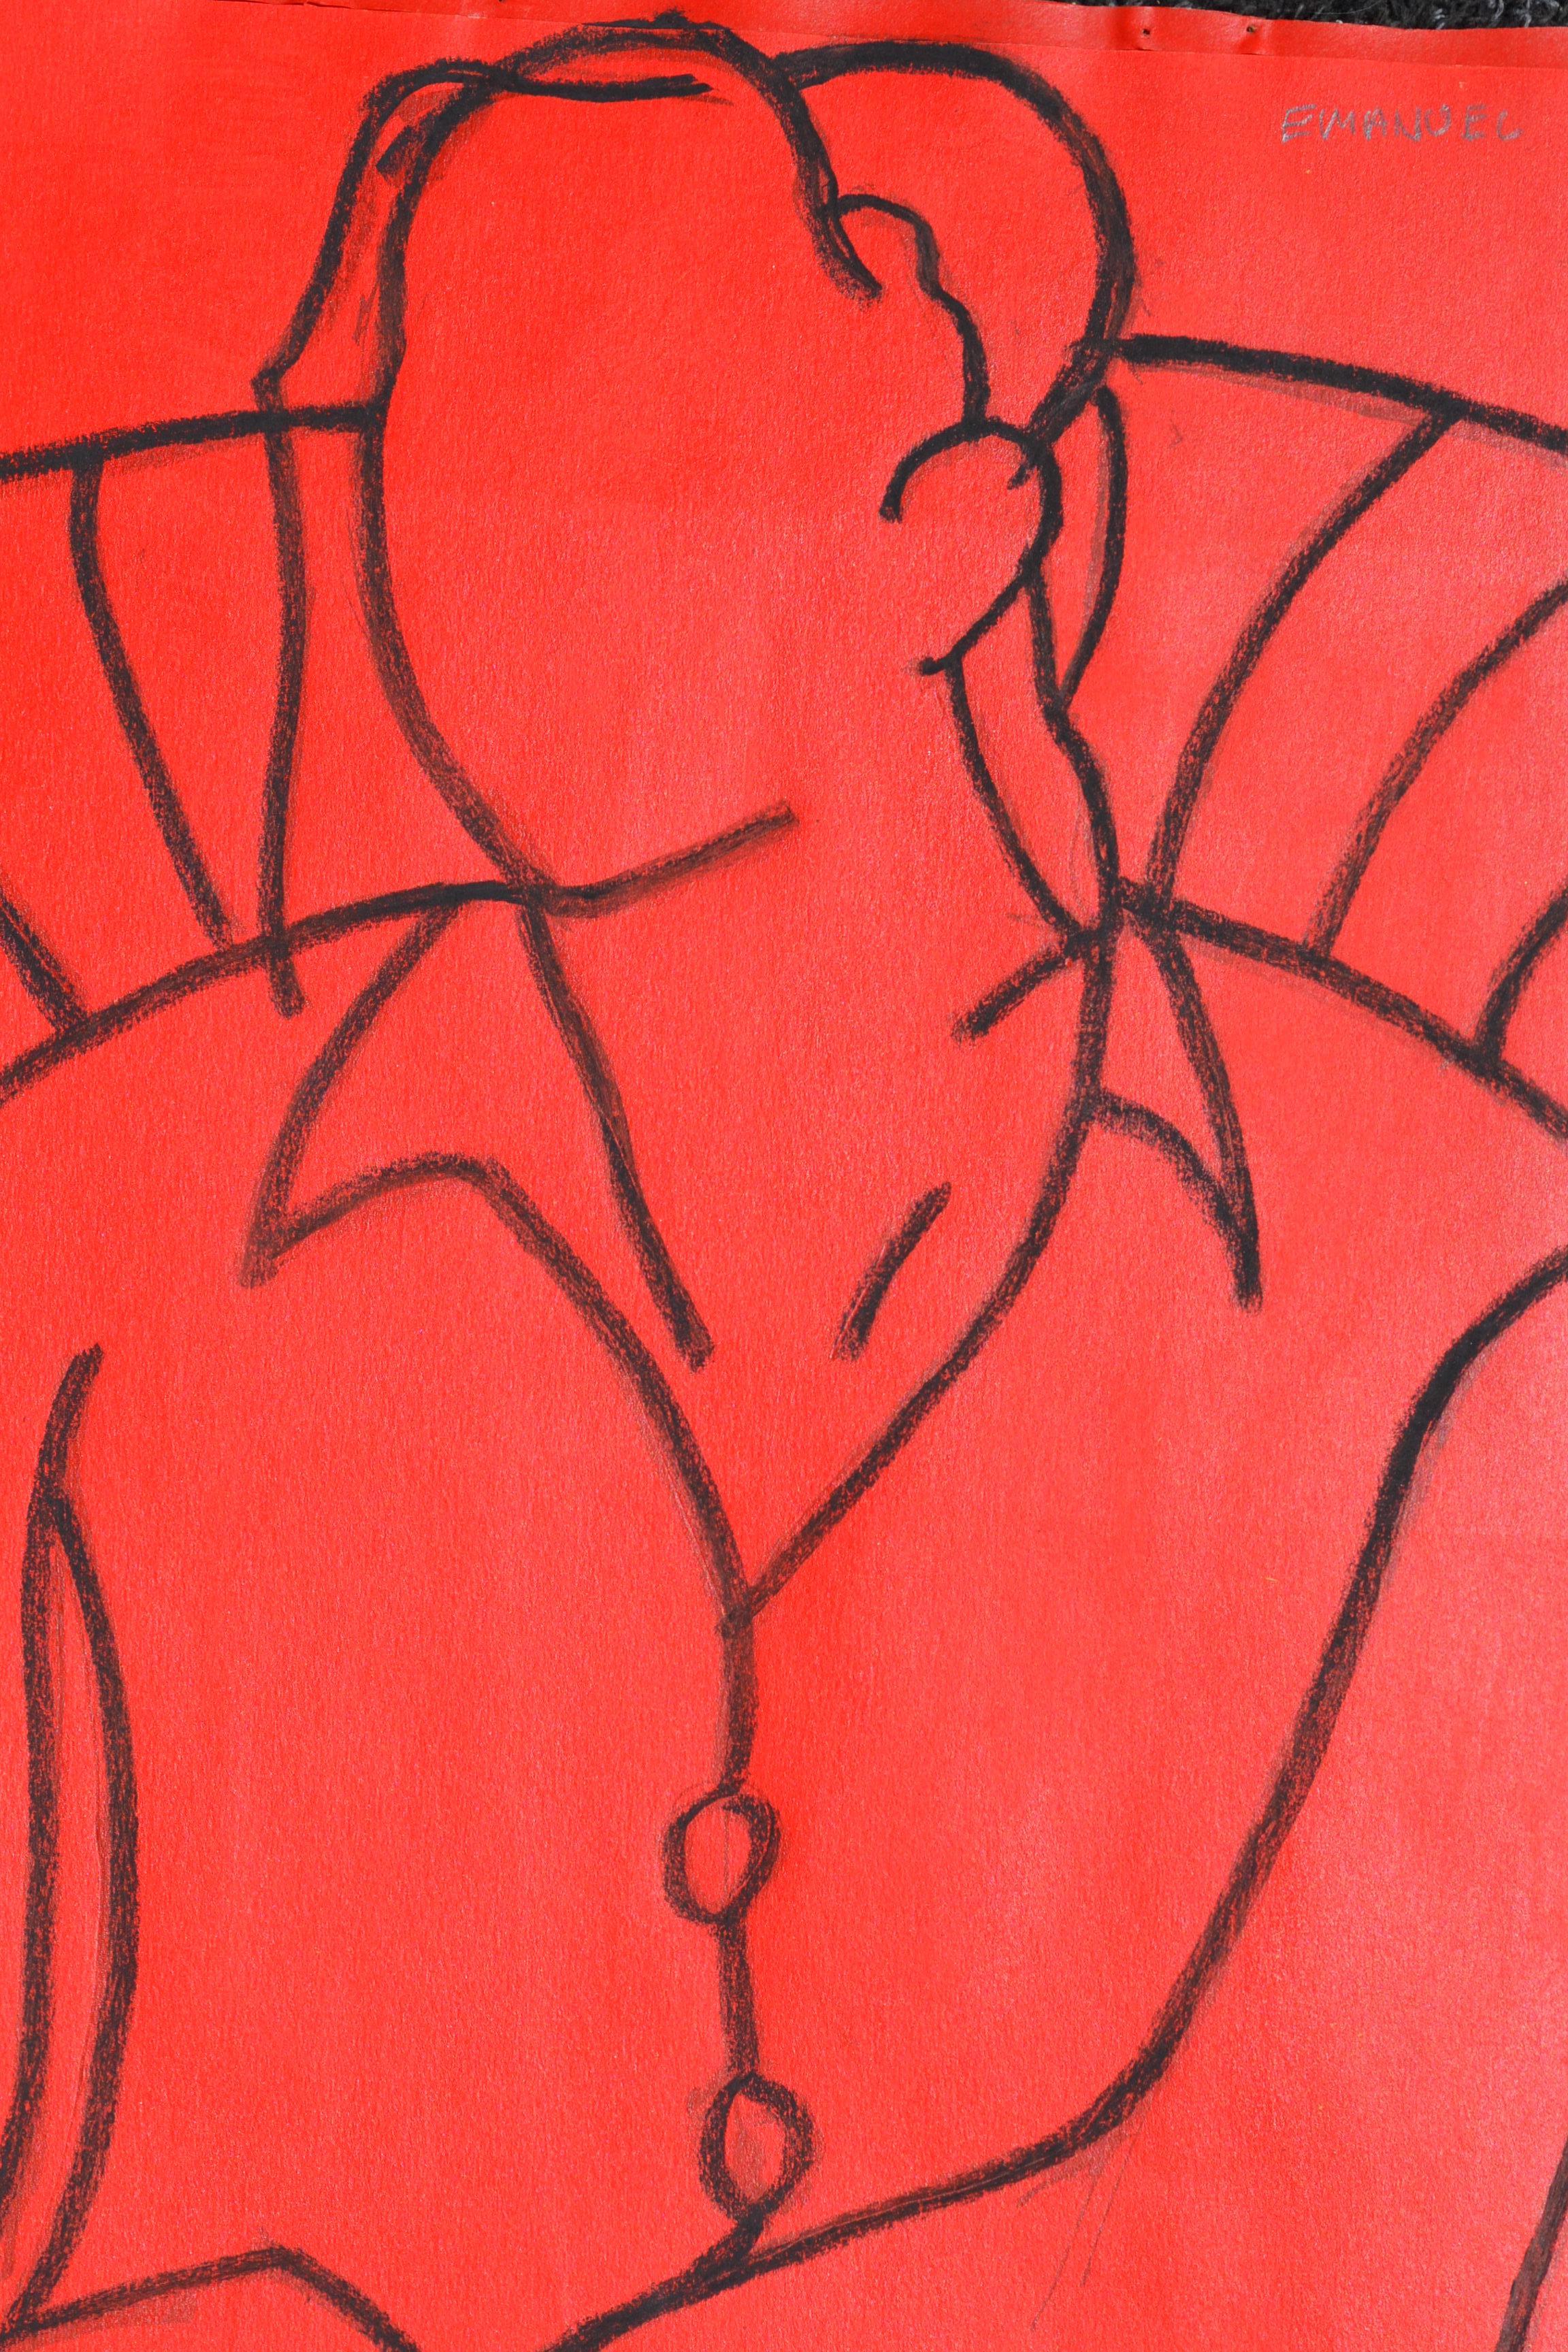 Rote Mono-Figur: Zeitgenössisches figuratives Gemälde in Mischtechnik von John Emanuel